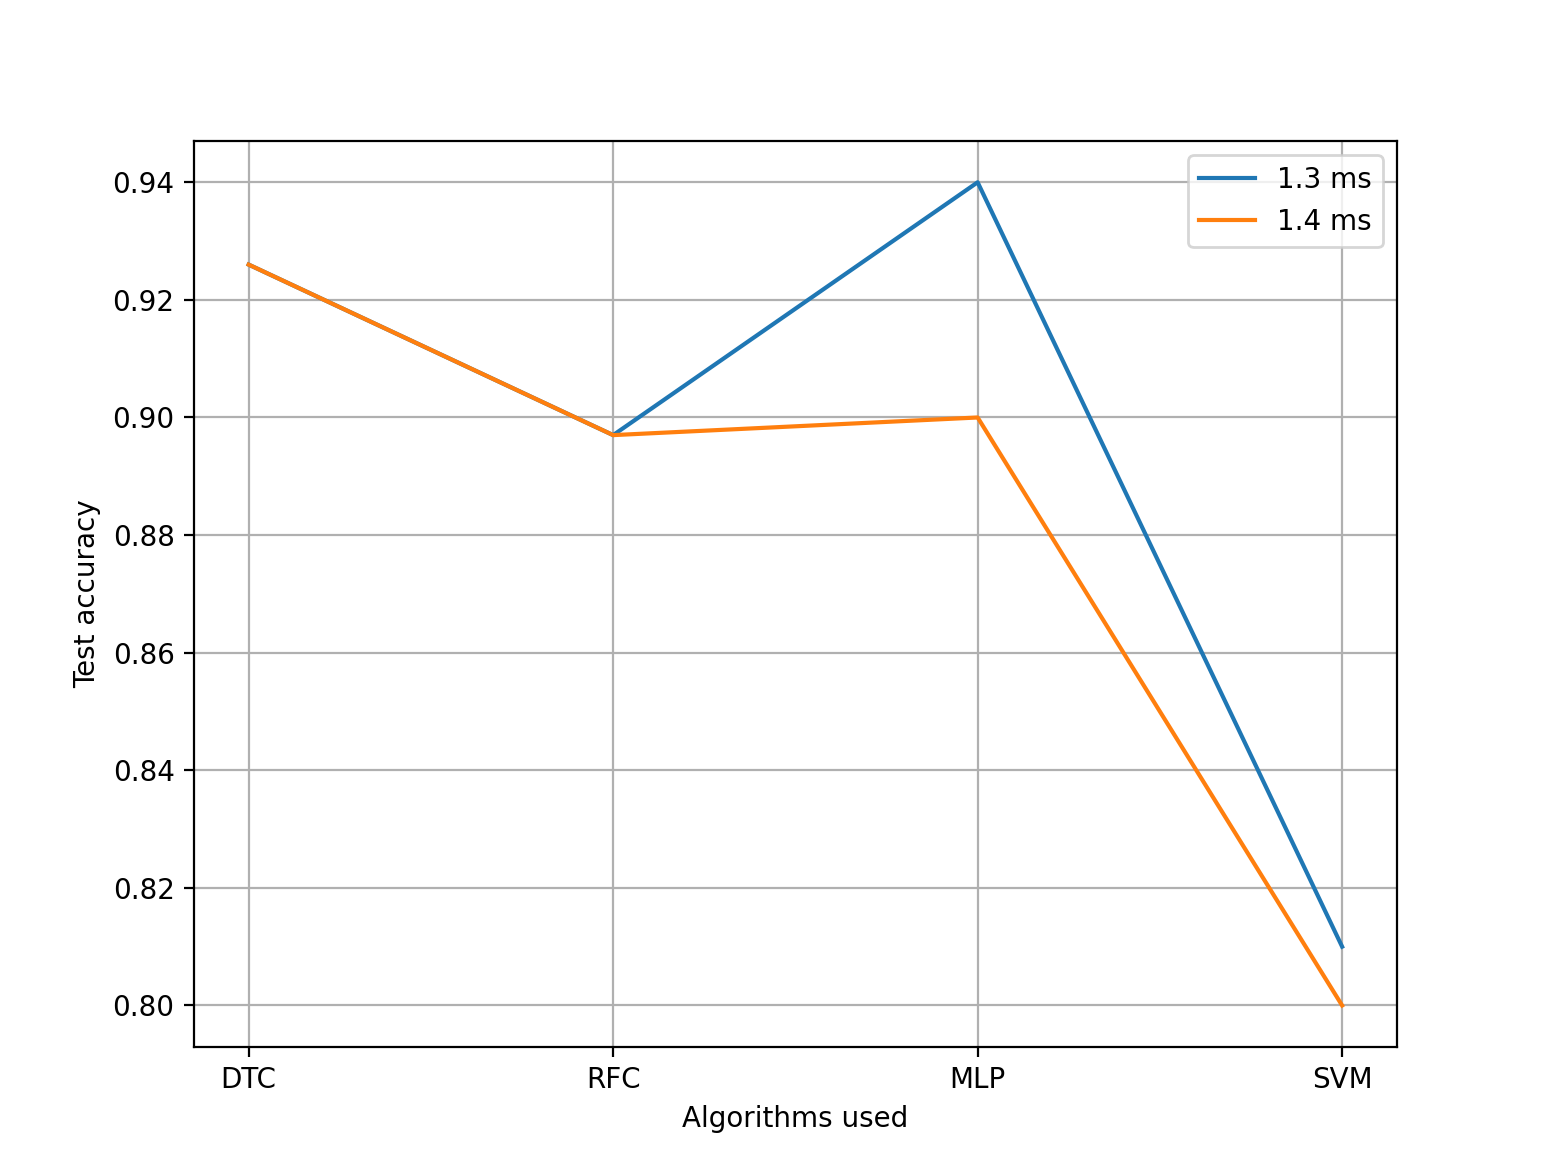 图中可以看出DTC具有较强稳定性，且正确率较高，是一种很好的分类算法。